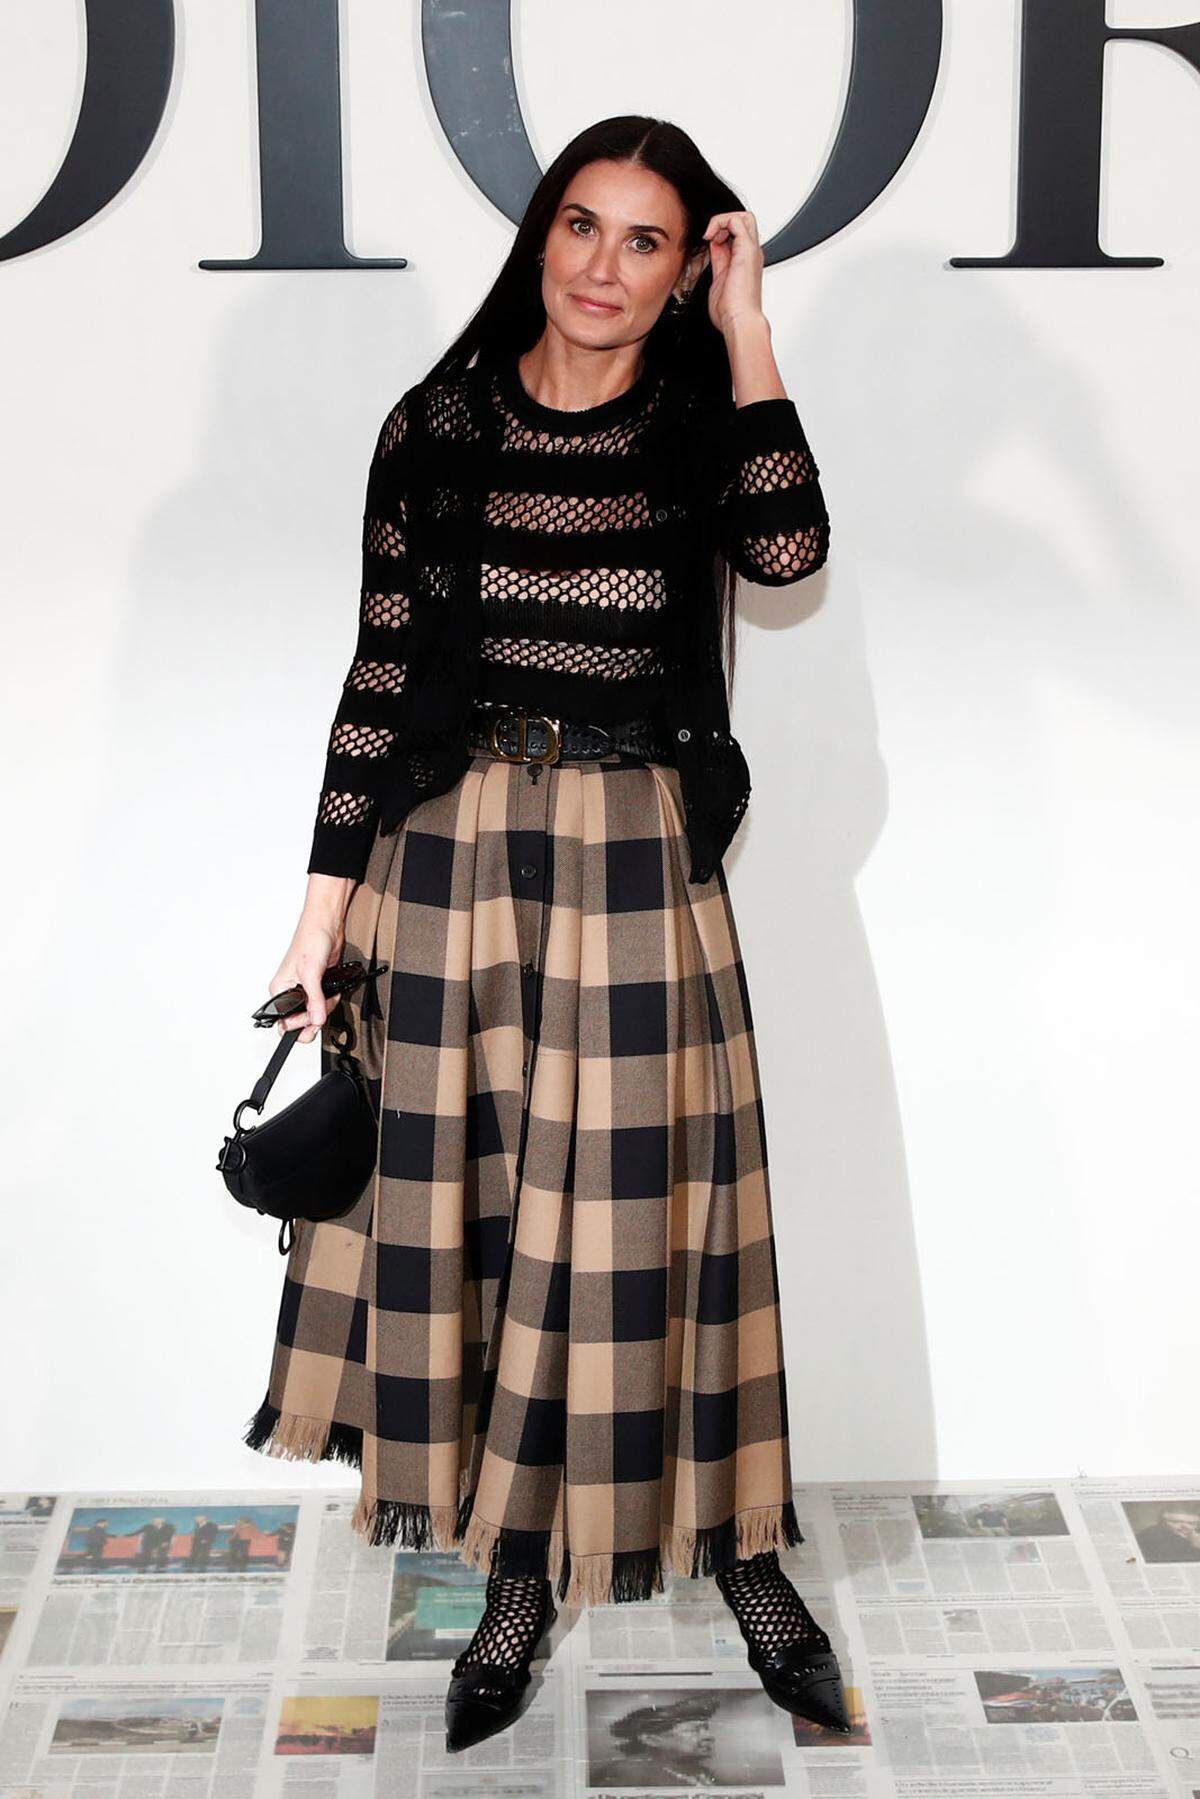 Kreativdirektorin Maria Grazia Chiuri präsentierte in Paris ihre neuen Trends für Dior. Viele Stars ließen sich das nicht entgehen, so auch Demi Moore.